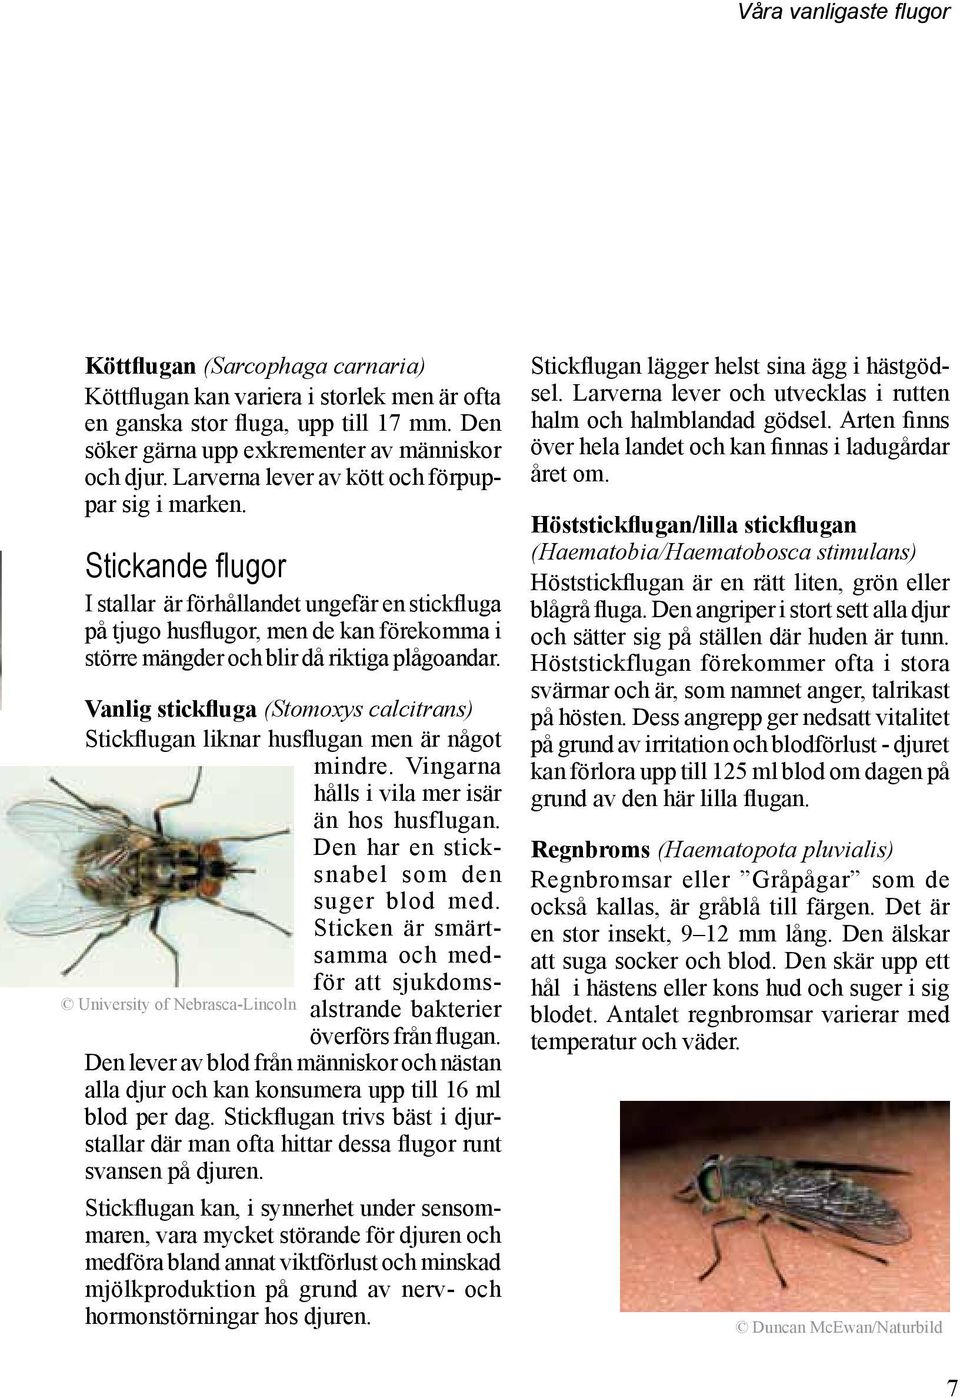 Handbok för bekämpning av. flugor. samt andra insekter och ohyra ...